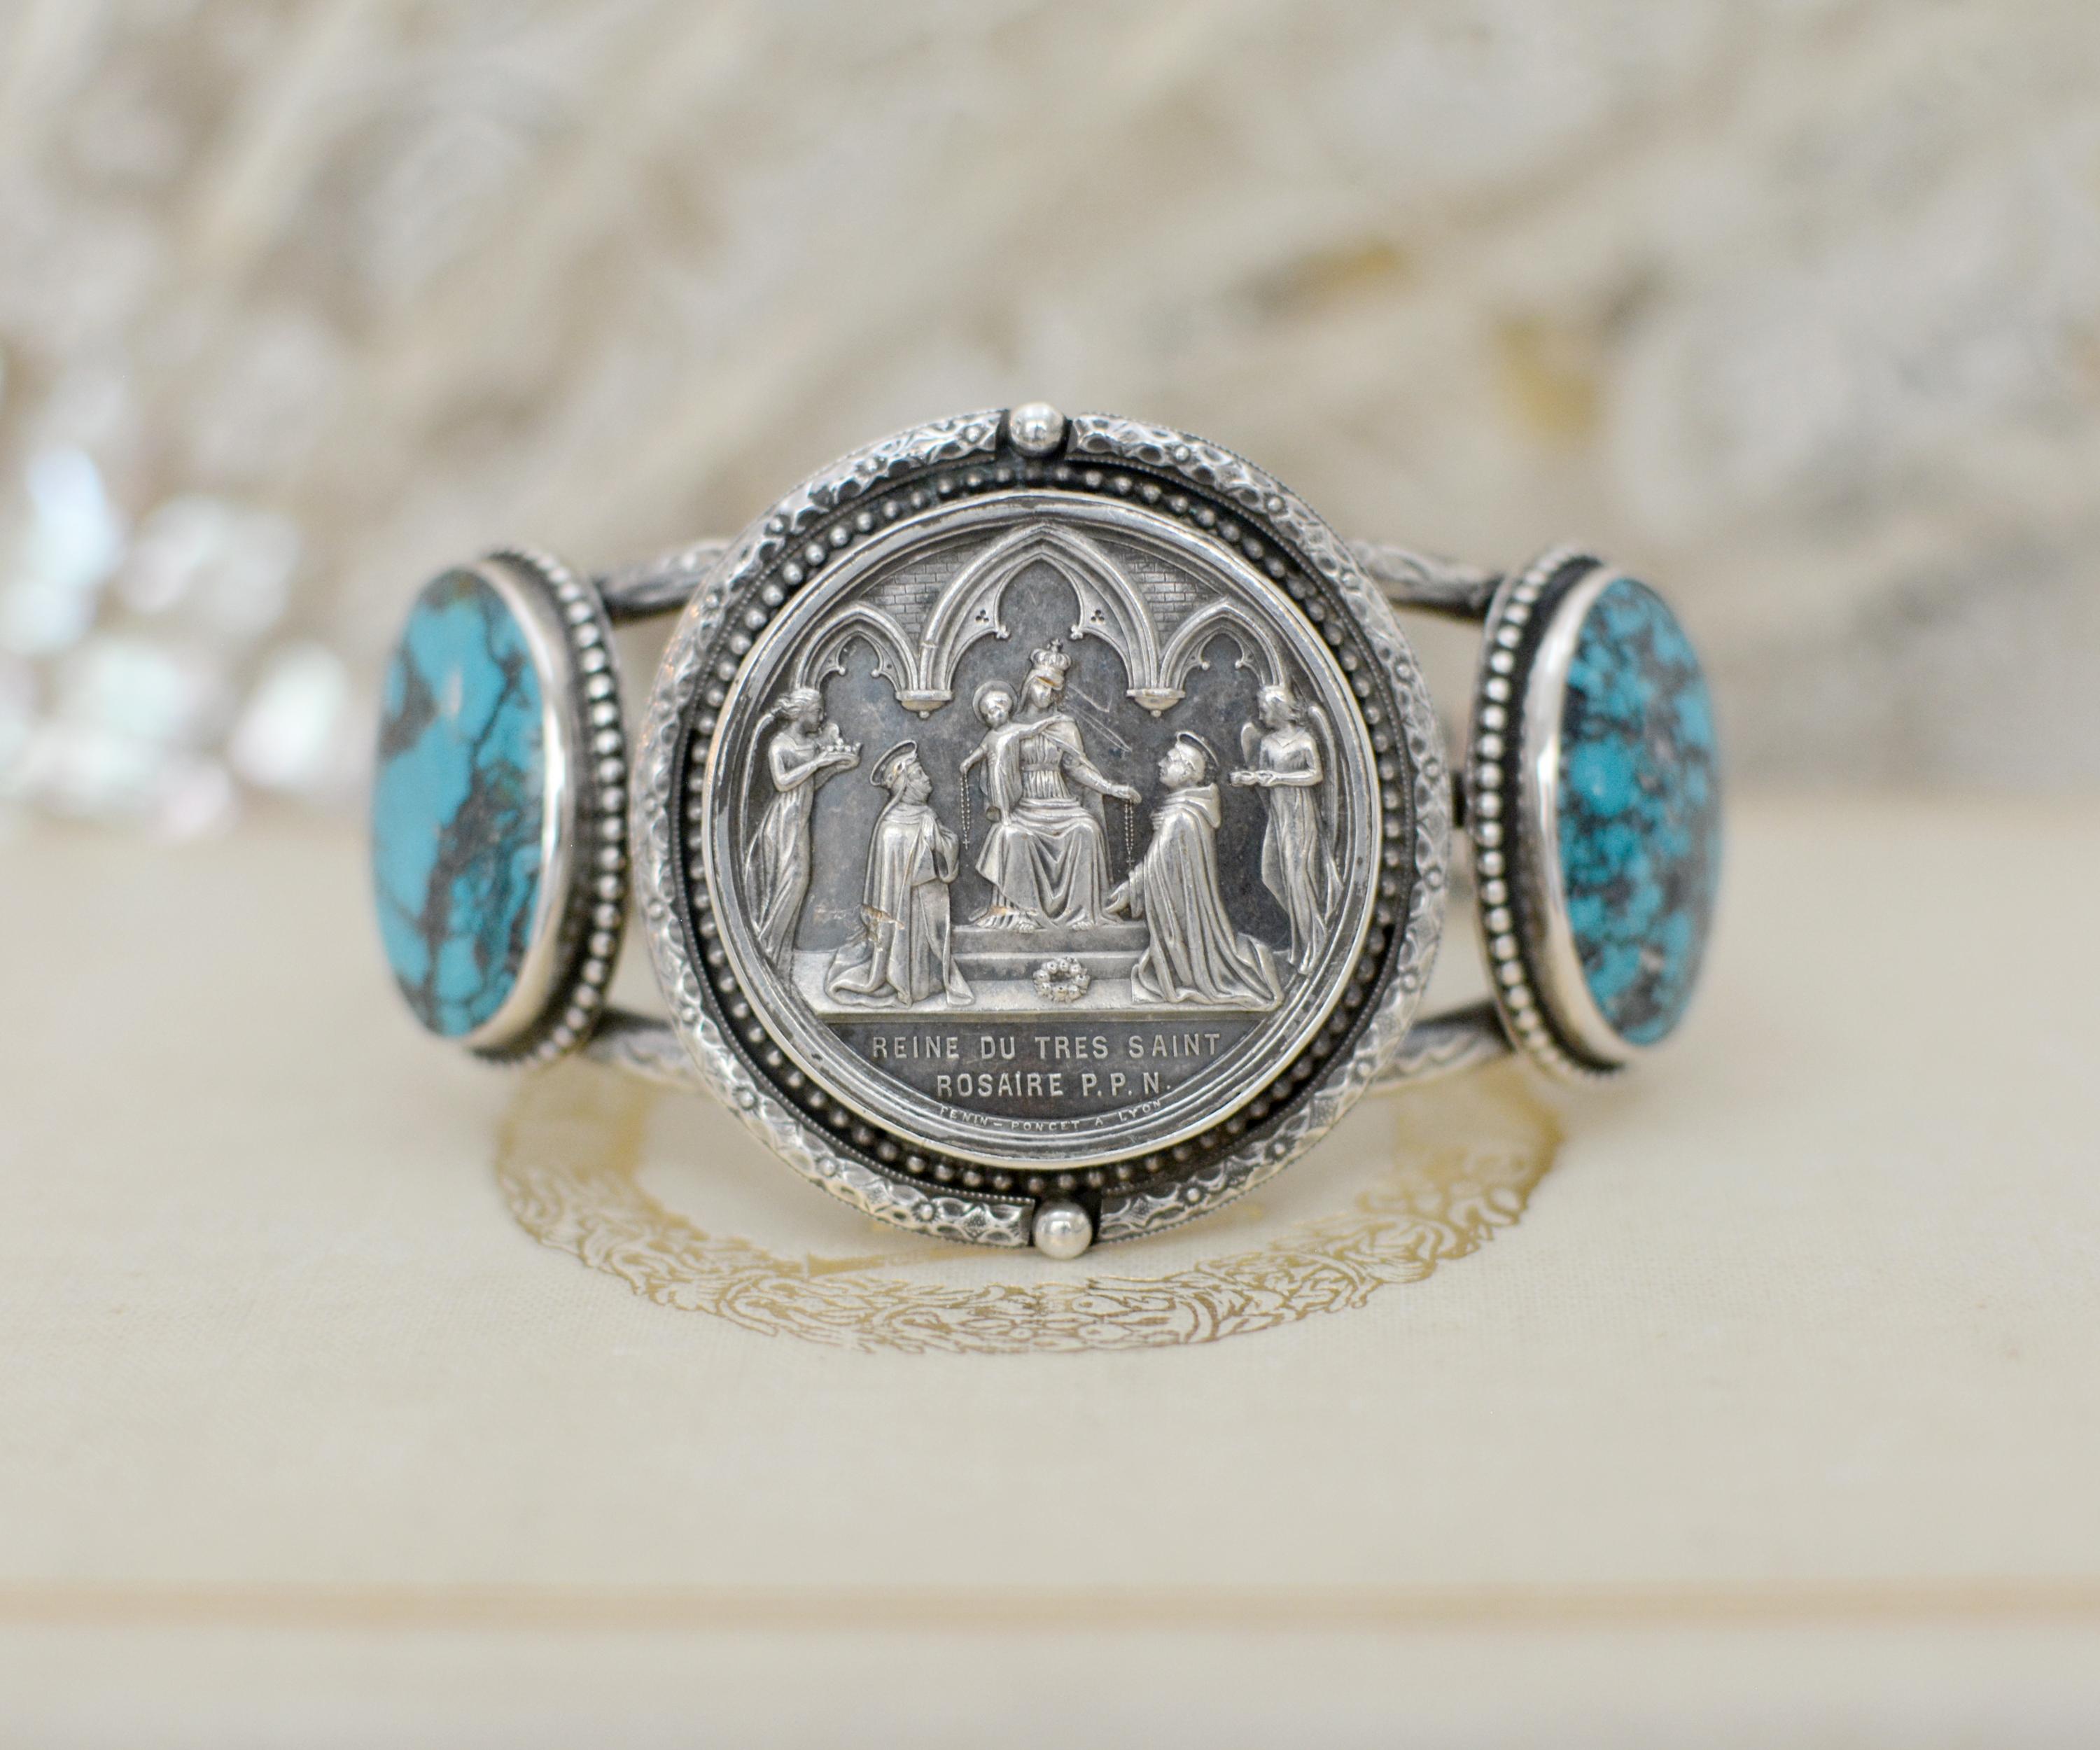 Dieses einzigartige Manschettenarmband aus Sterlingsilber zeigt eine originale antike französische Heiratsmedaille aus dem neunzehnten Jahrhundert, die die Mutter Maria mit dem Jesuskind an ihrer Seite darstellt. Unter dem knienden Paar stehen die